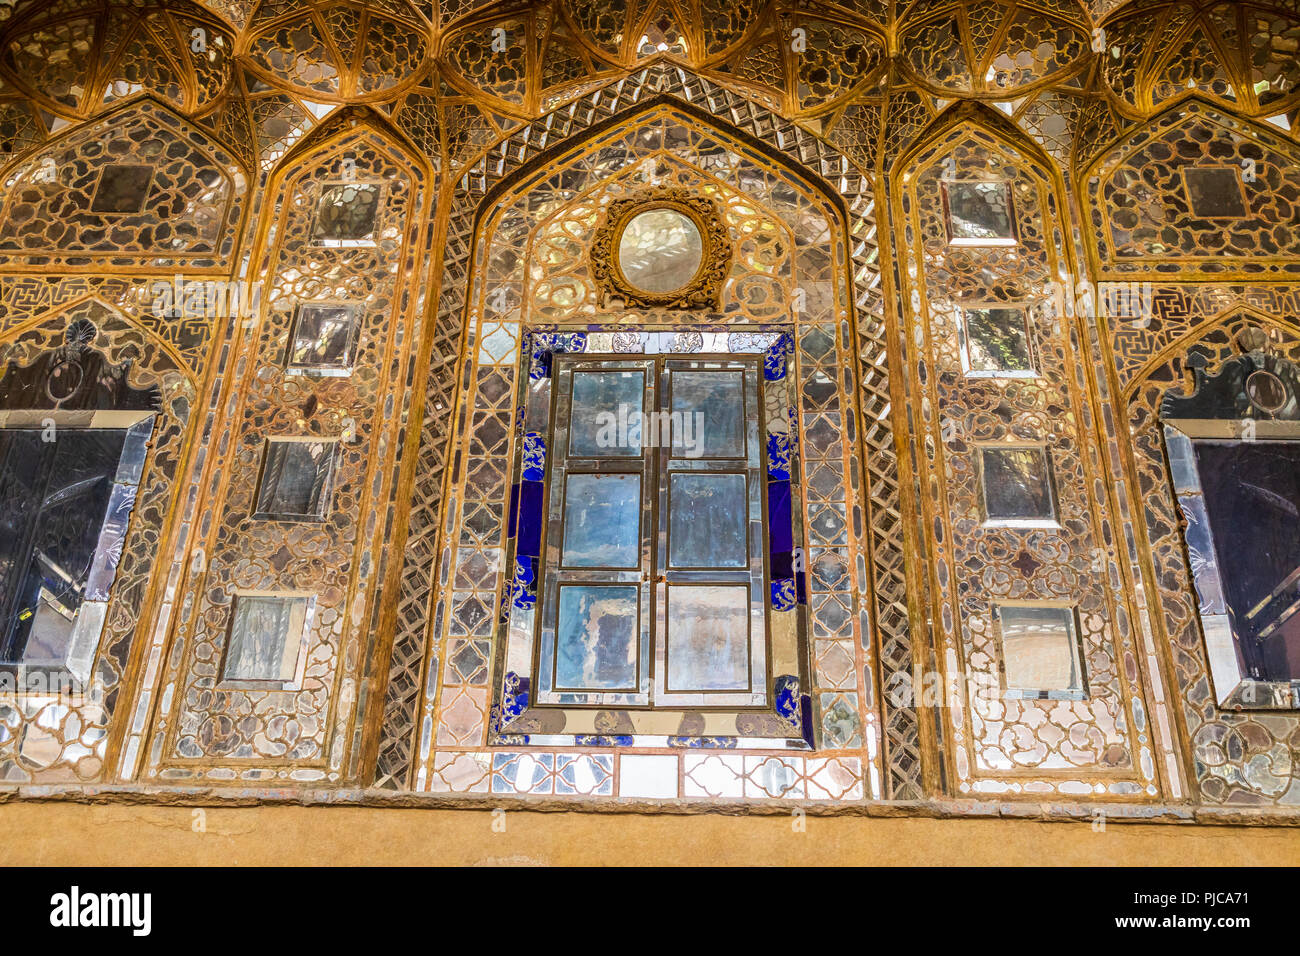 Repubblica islamica di Iran. Isfahan. Chehel Sotoun (anche Chihil Sutun,Chehel Sotoon,"quaranta colonne") un padiglione nel parco al fine di una piscina. Costruito da Shah Foto Stock